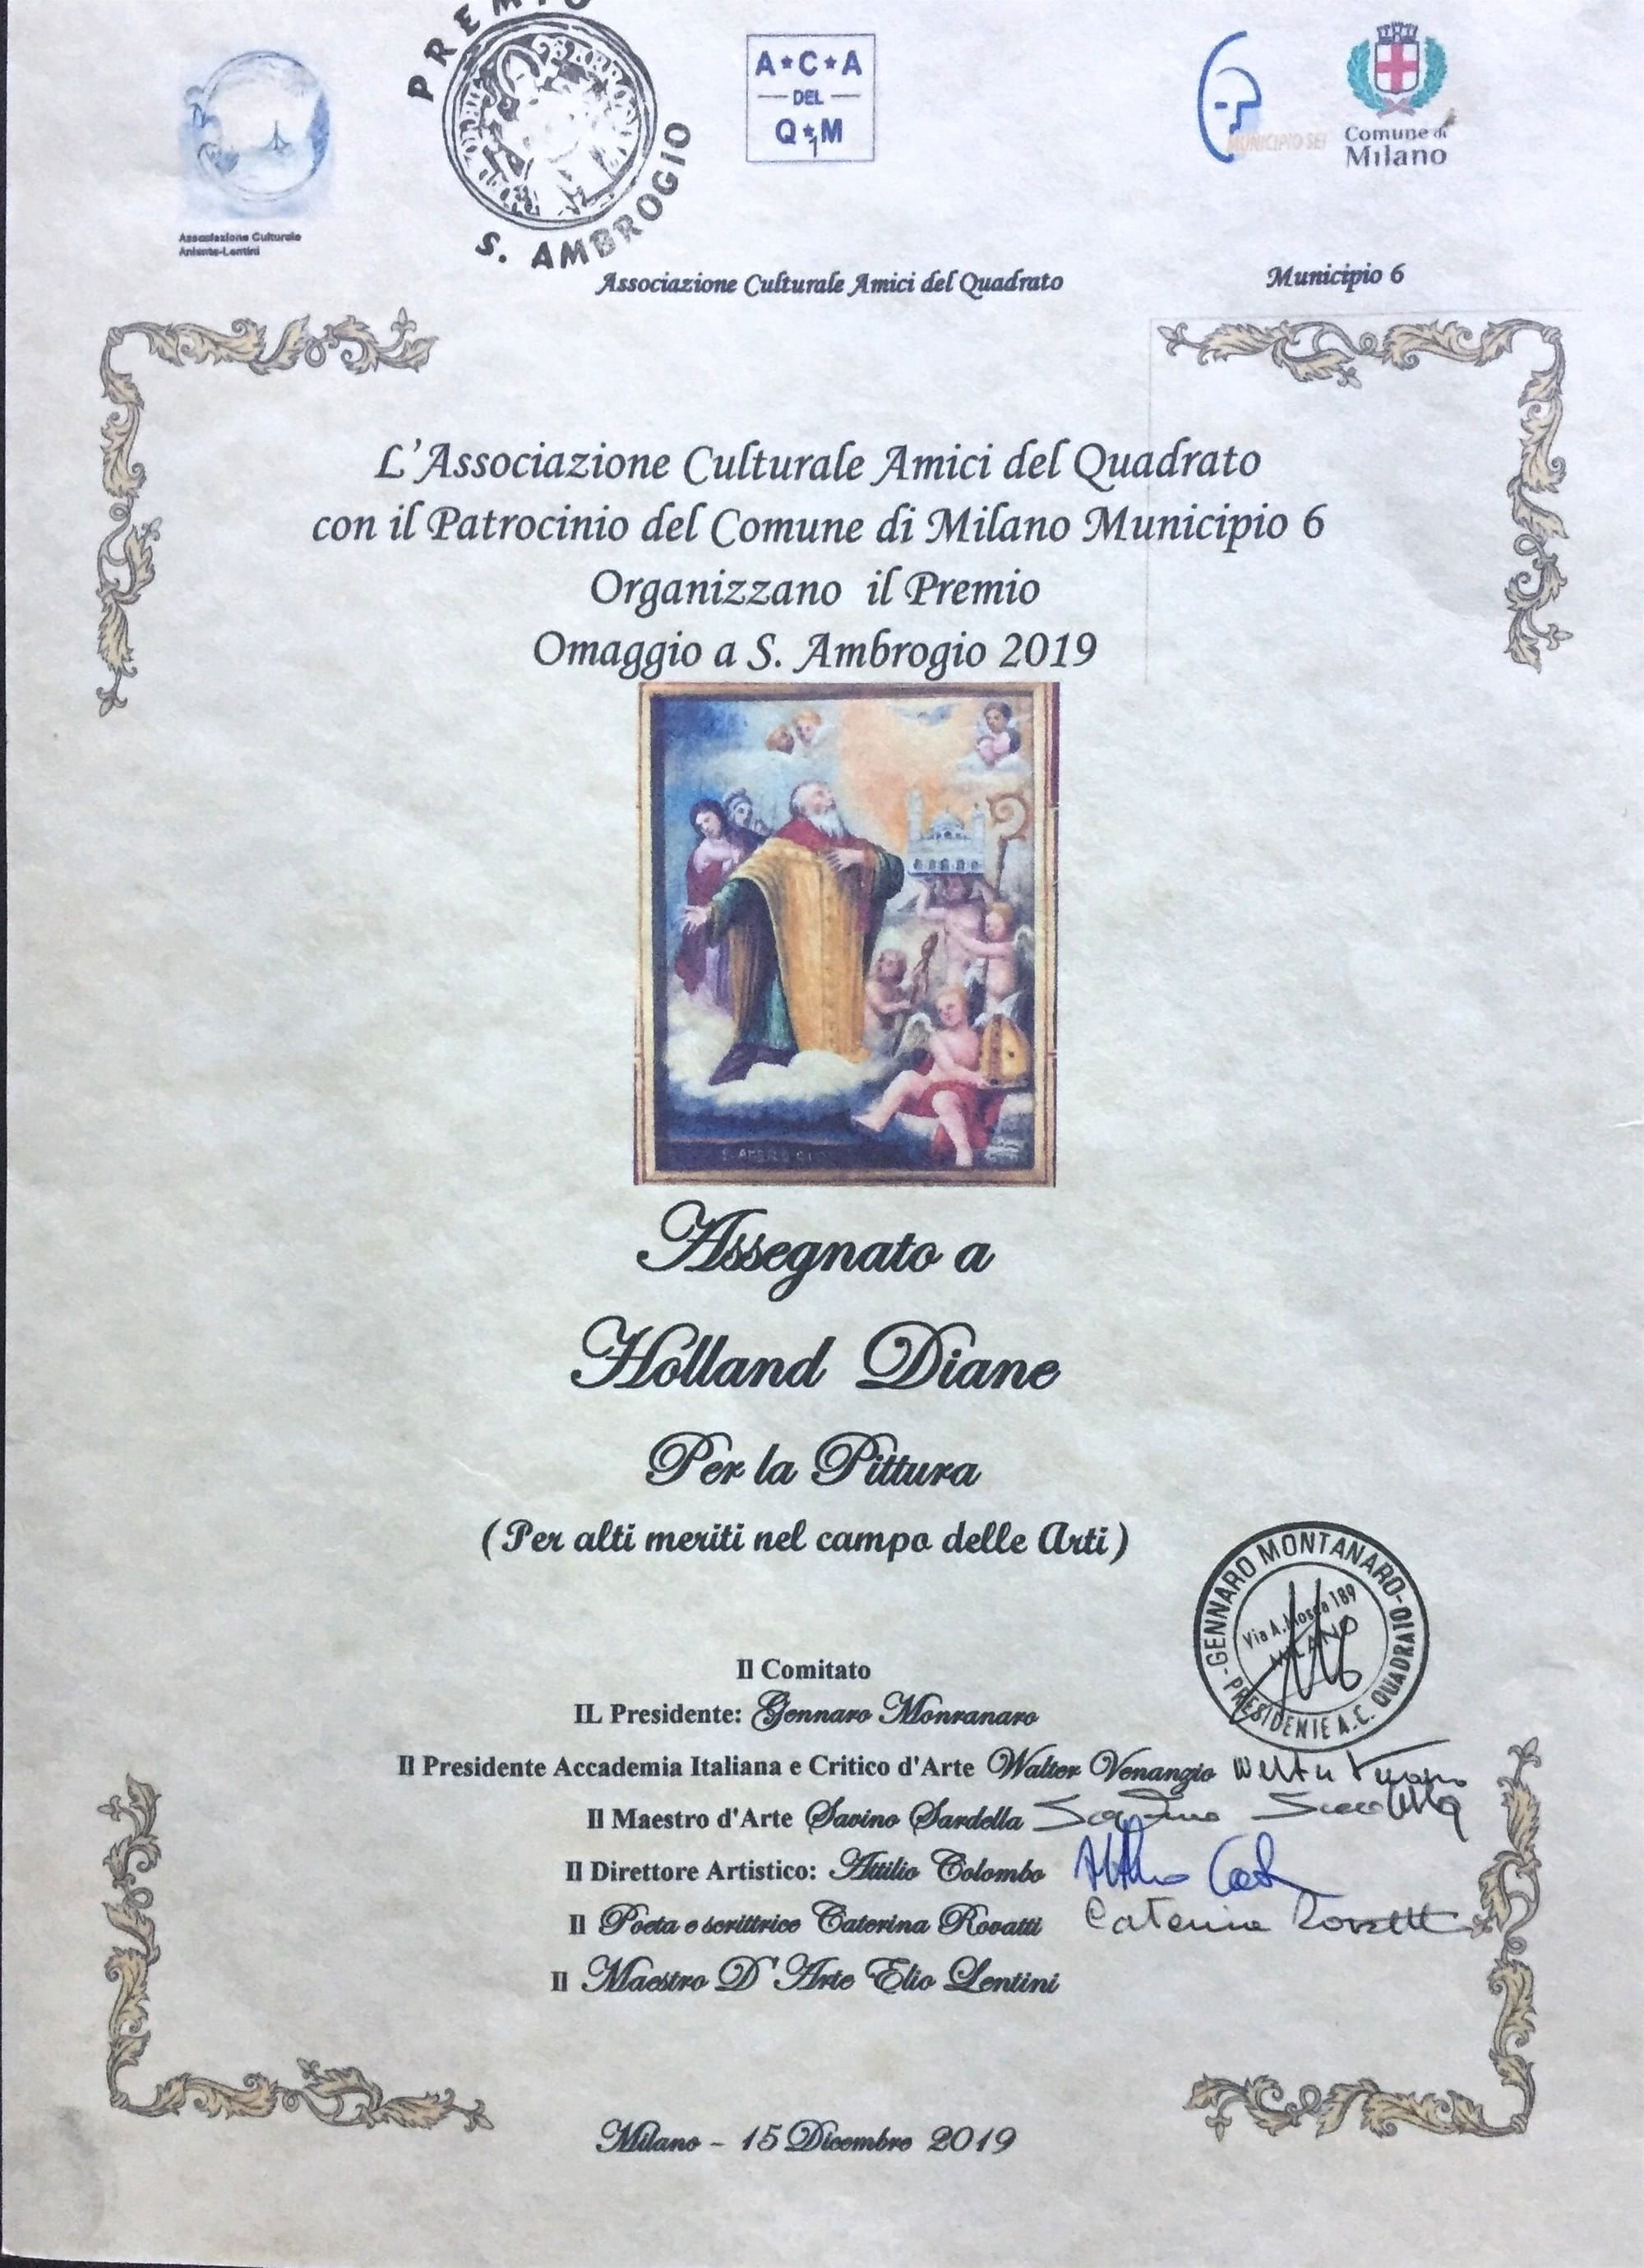 15 December 2019: Award for "Exuberant"' in the Festival and in the Publications of L'Associazione Culturale Amici del Quadrato, di Milano.